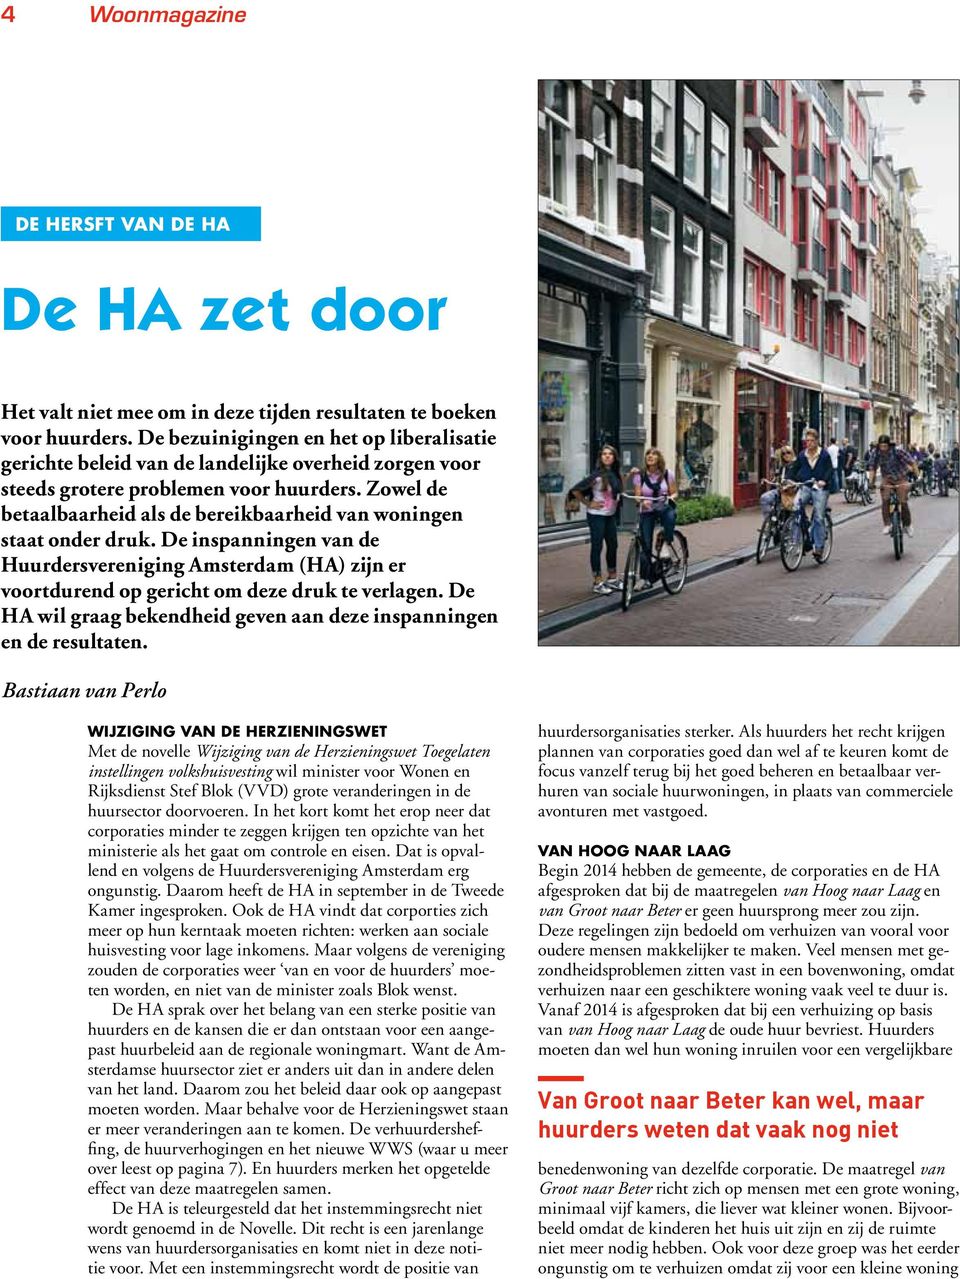 Zowel de betaalbaarheid als de bereikbaarheid van woningen staat onder druk. De inspanningen van de Huurdersvereniging Amsterdam (HA) zijn er voortdurend op gericht om deze druk te verlagen.